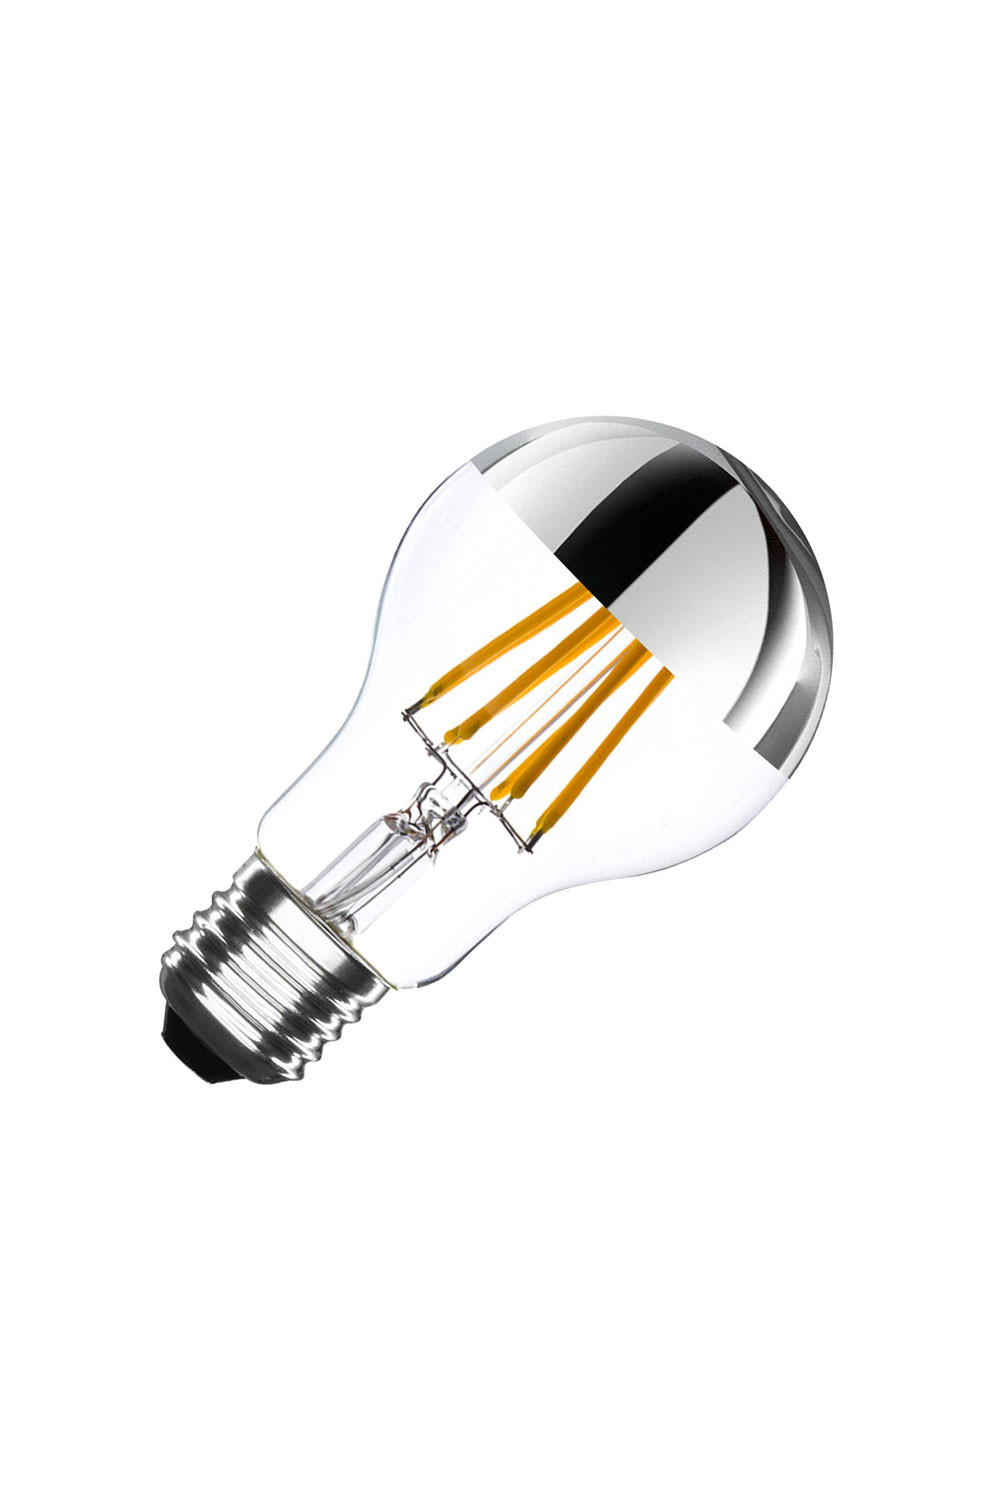 Détails du E27 LED Ampoule 3D Ambiance Décoration éblouissante Lampe à  Bulles